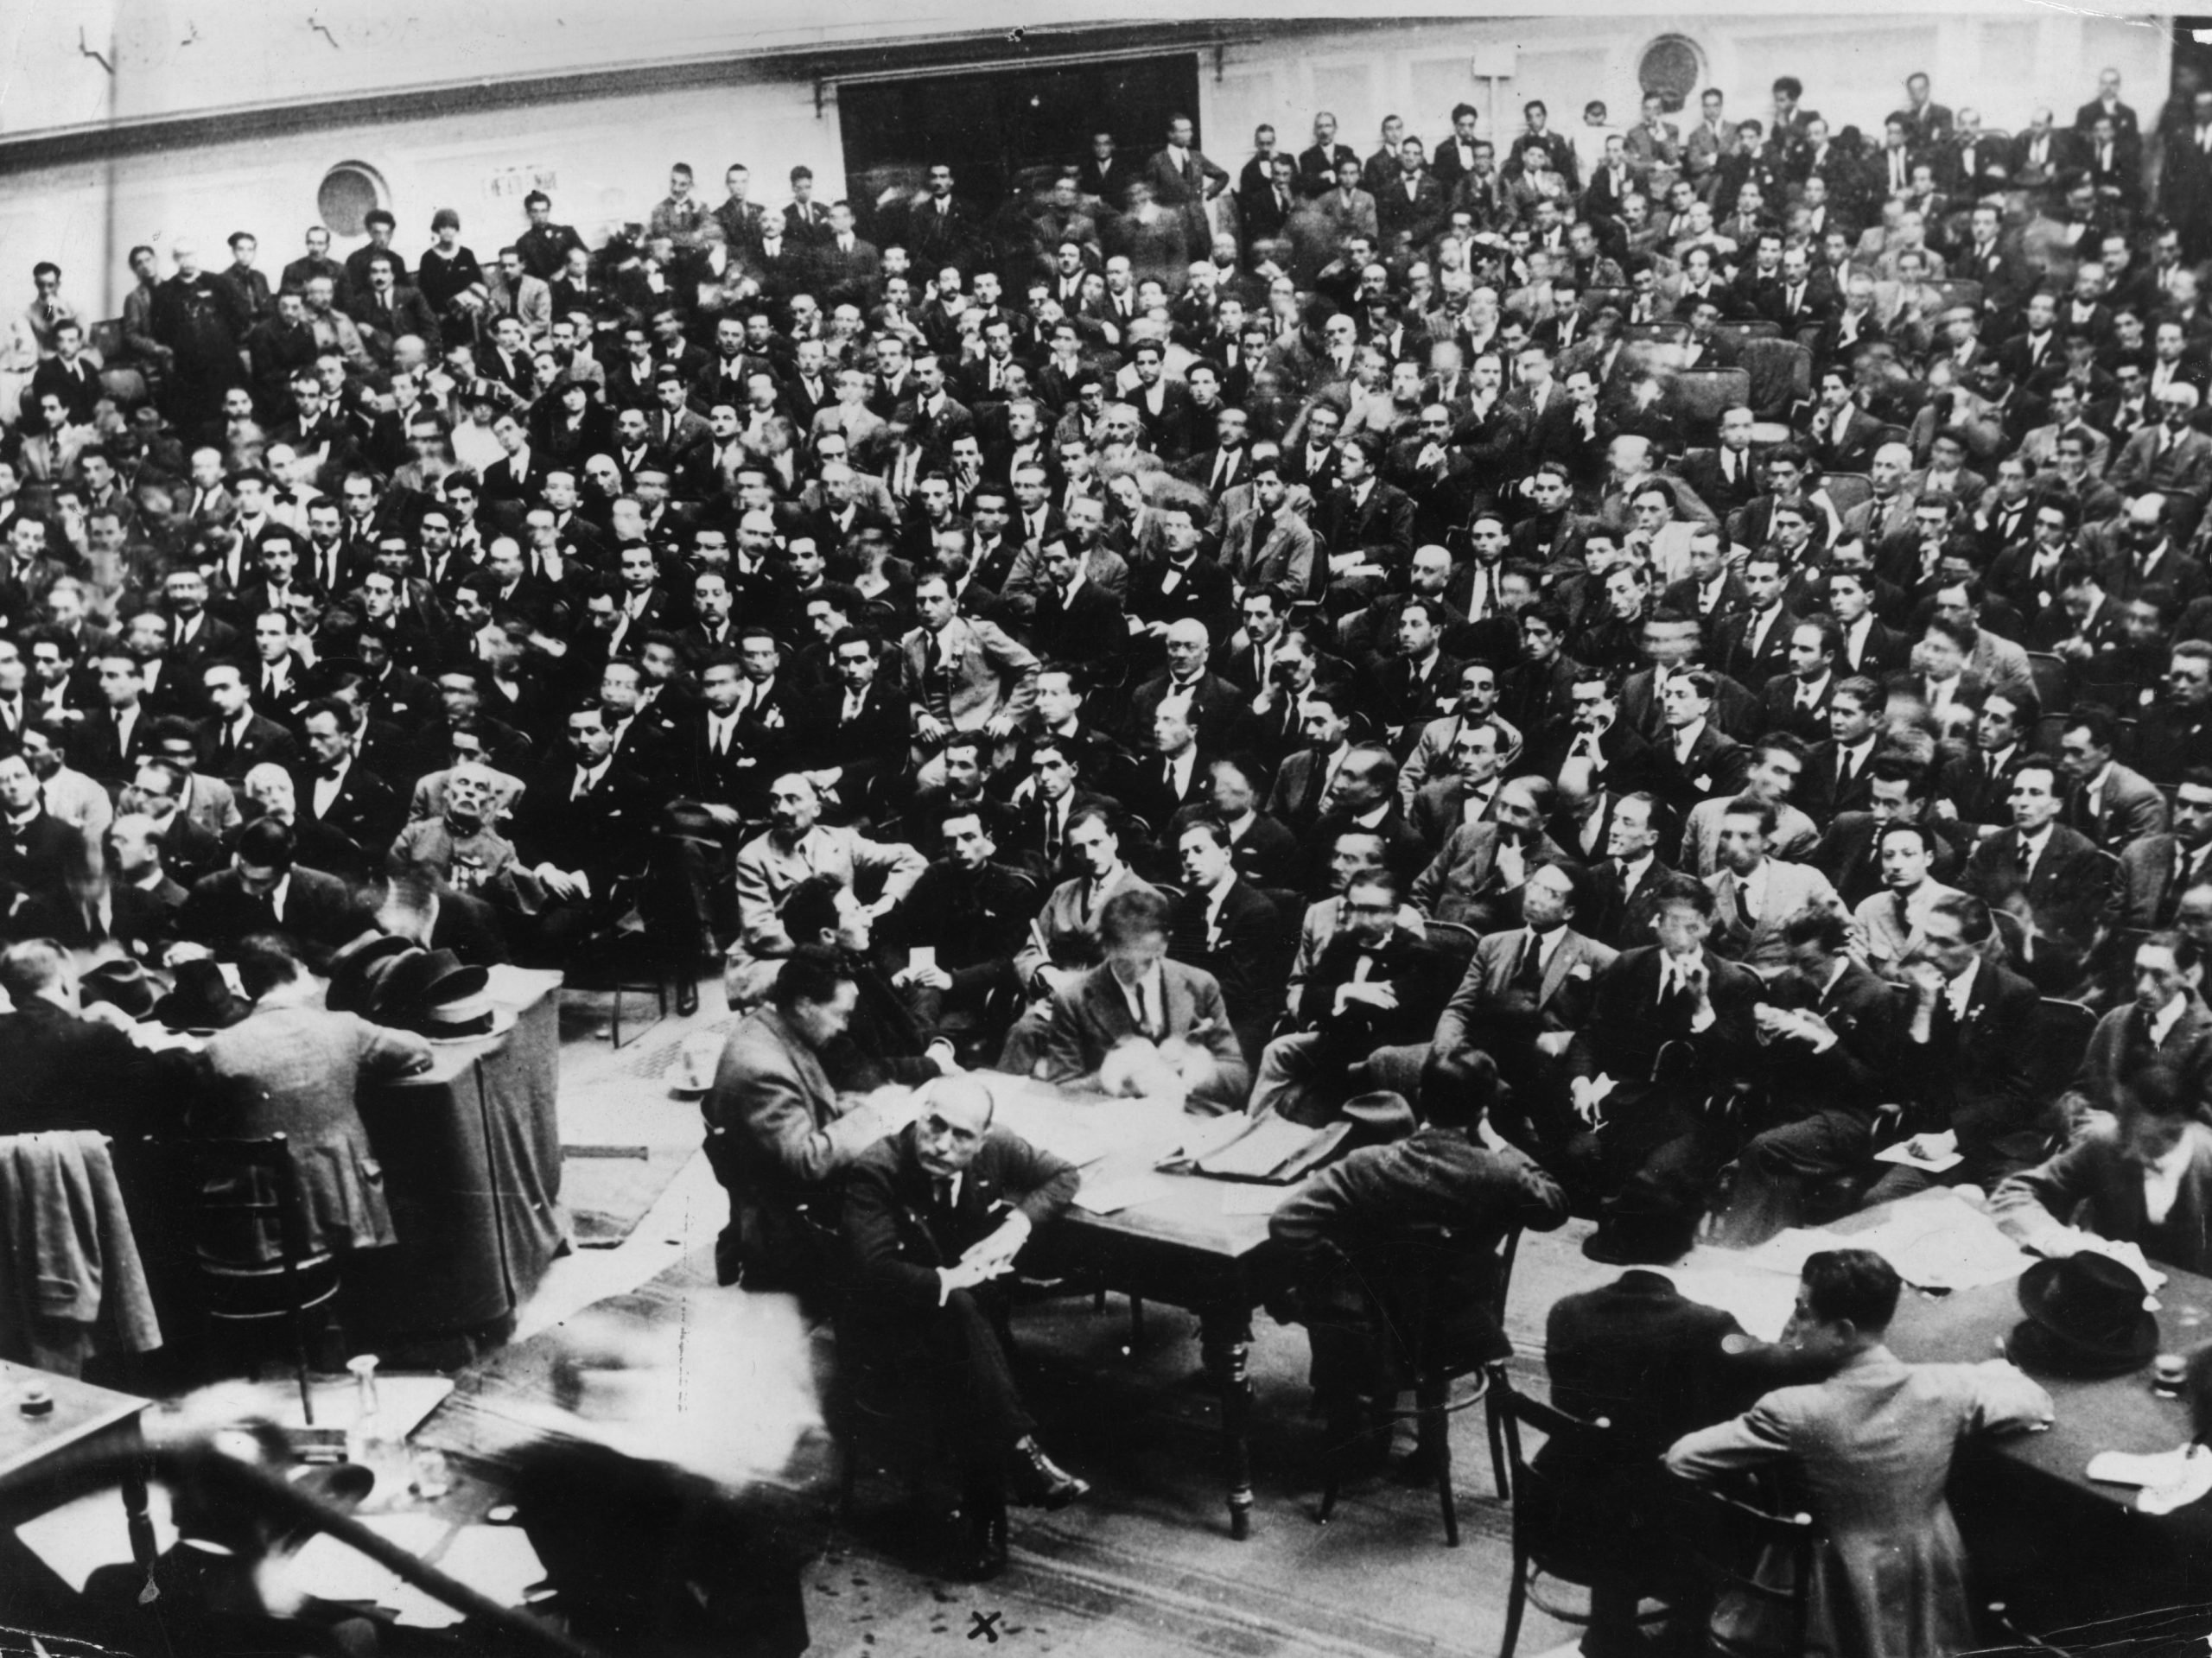 Italian dictator Benito Mussolini attends a fascist conference